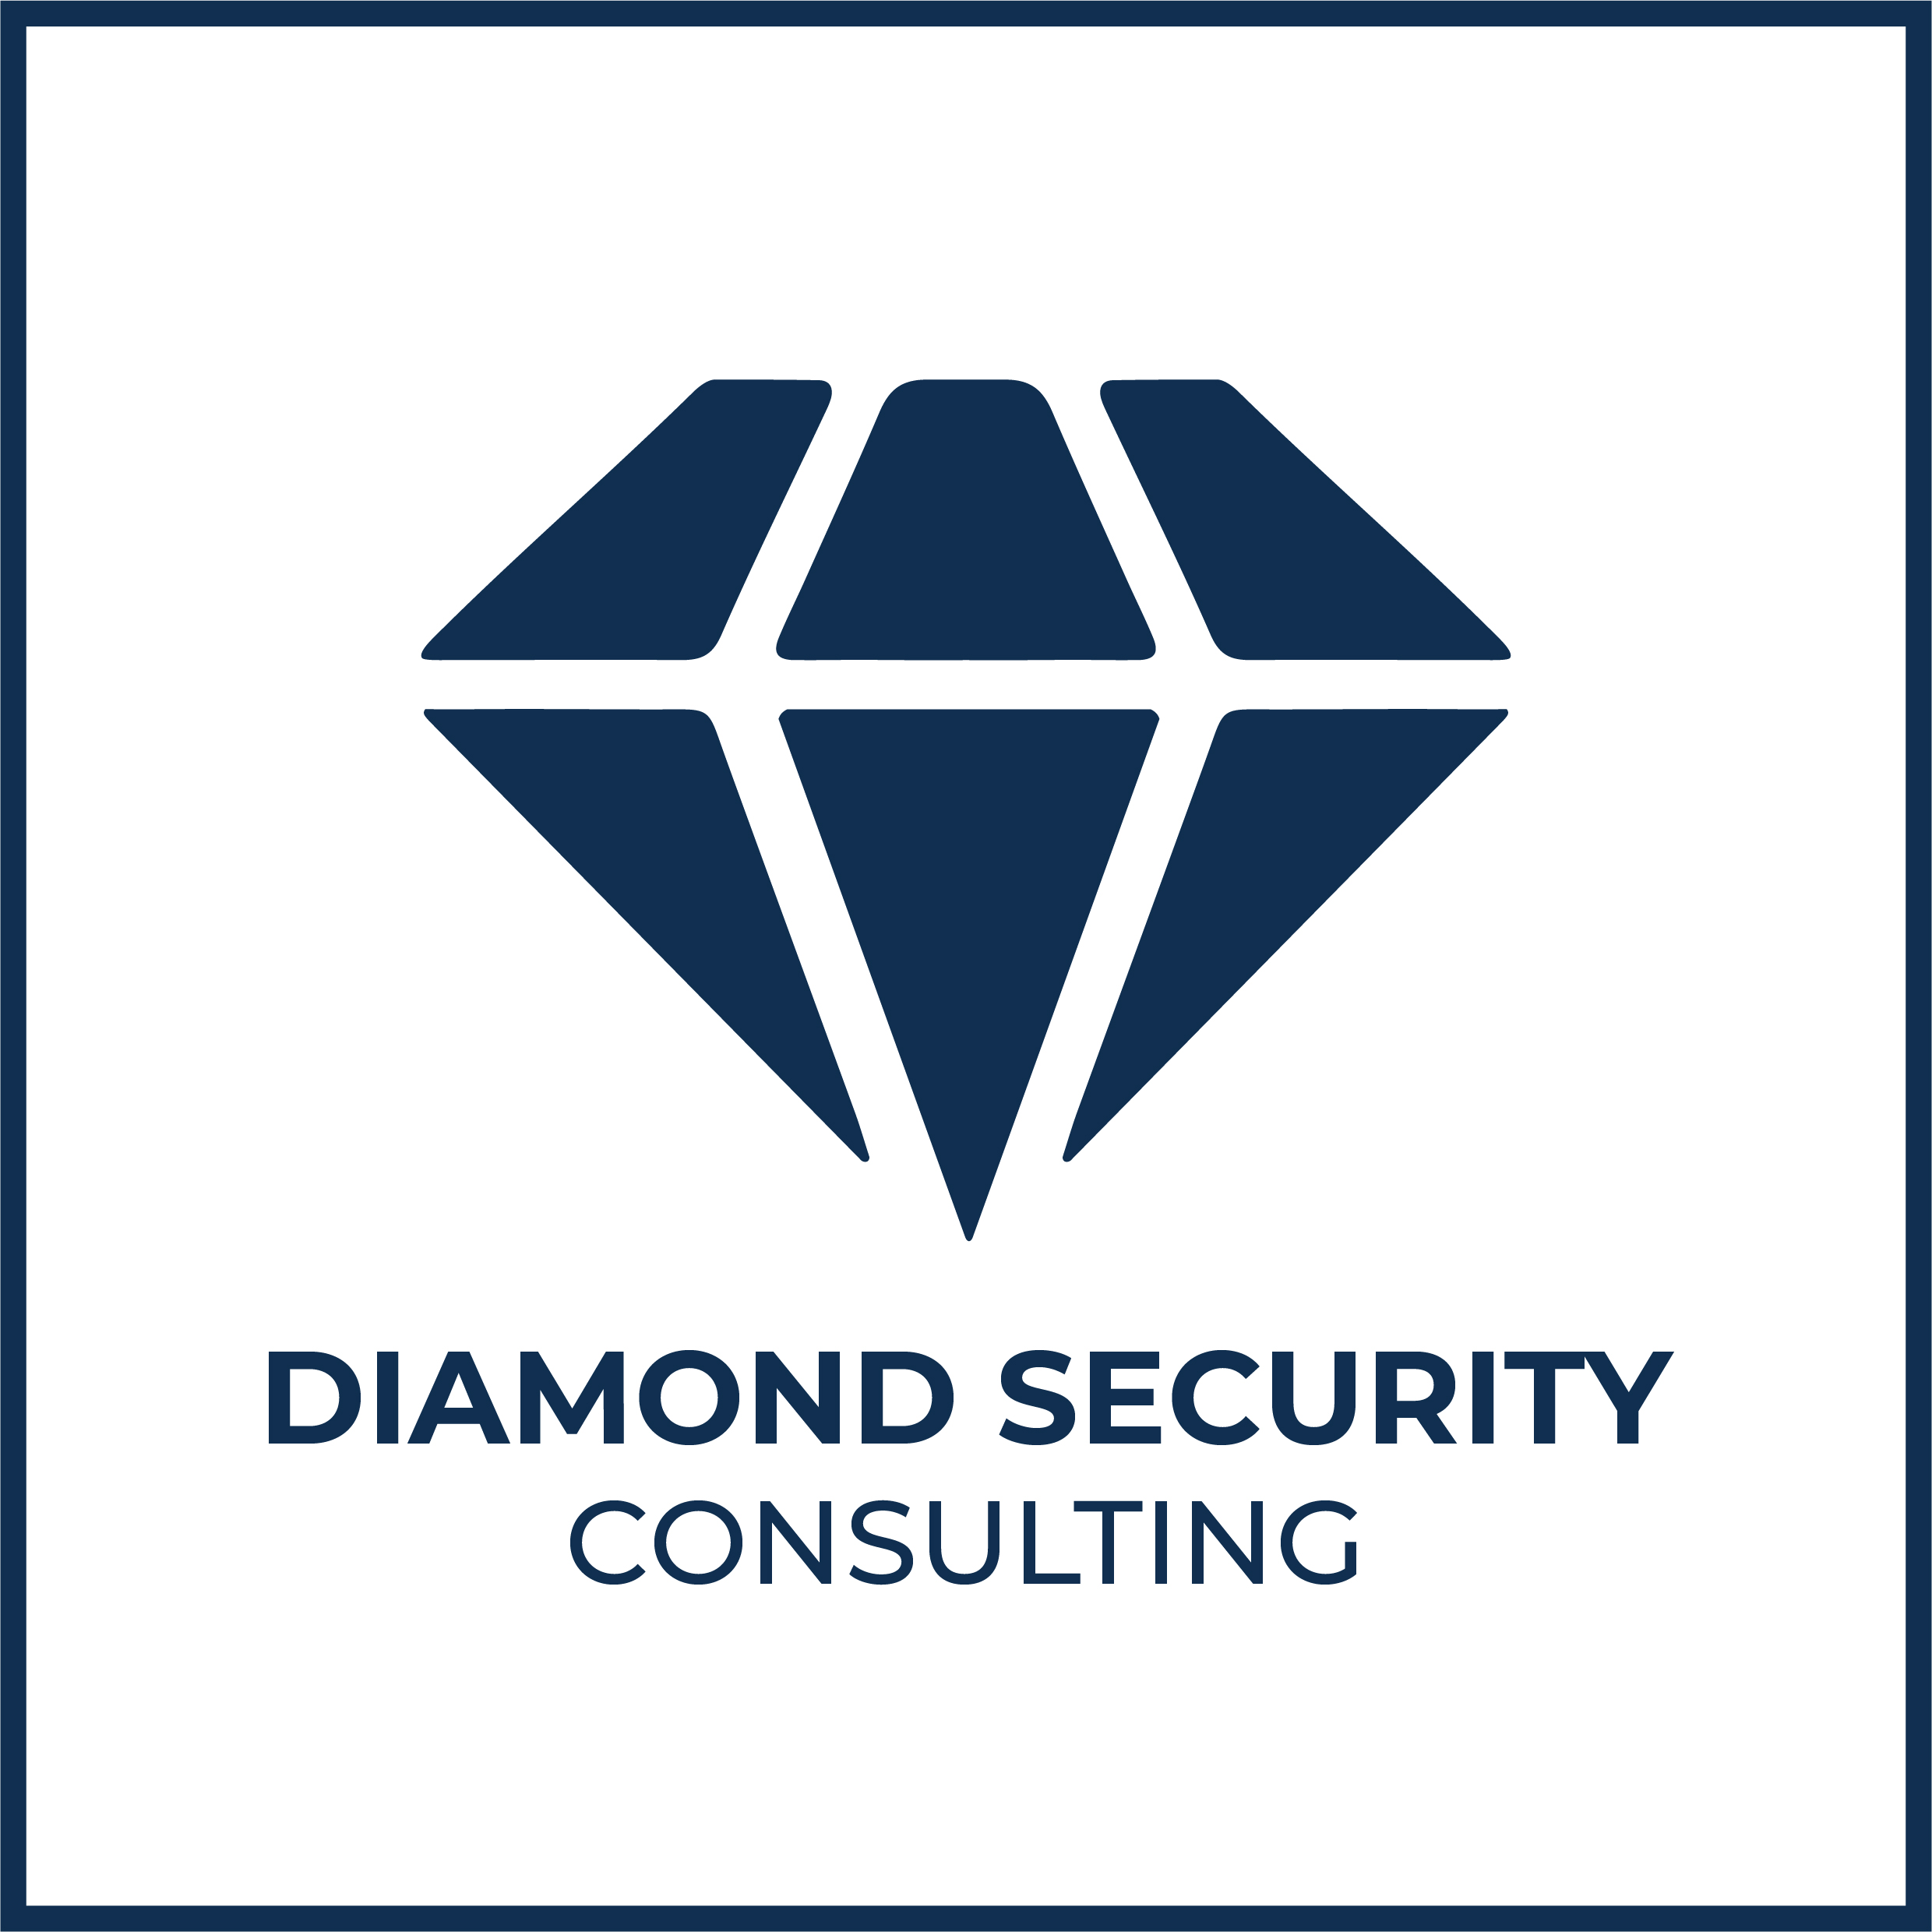 Un Nouveau Chapitre pour Diamond Security Consulting : Notre Nouvelle Identité Visuelle